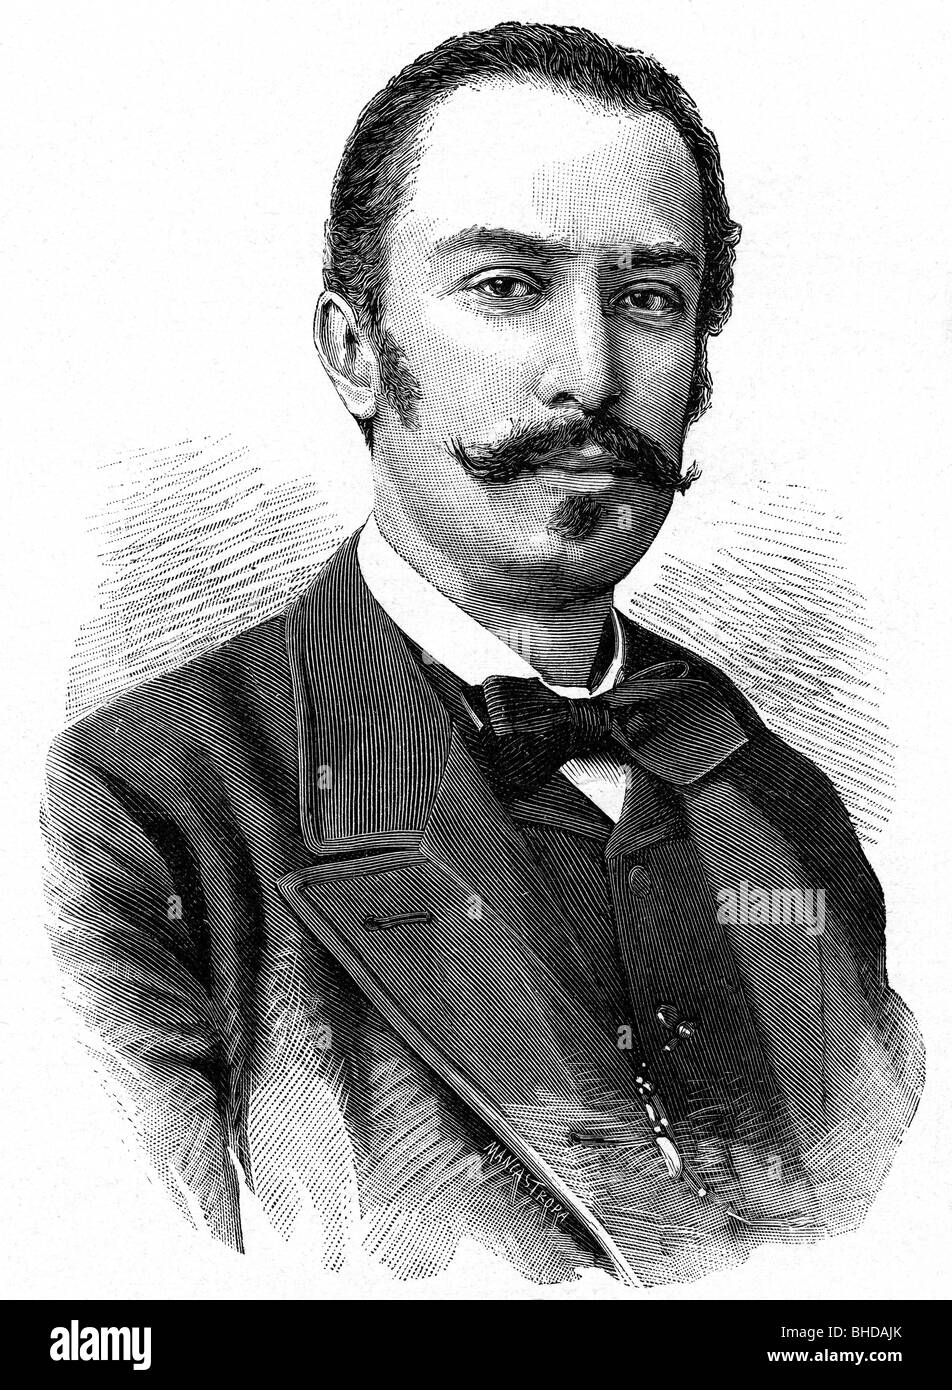 Giolitti, Giovanni, 37.10.1842 - 17.7.1928, Italian politician, Prime Minister of Italy 1892/1893, portrait, wood engraving, circa 1892, Stock Photo